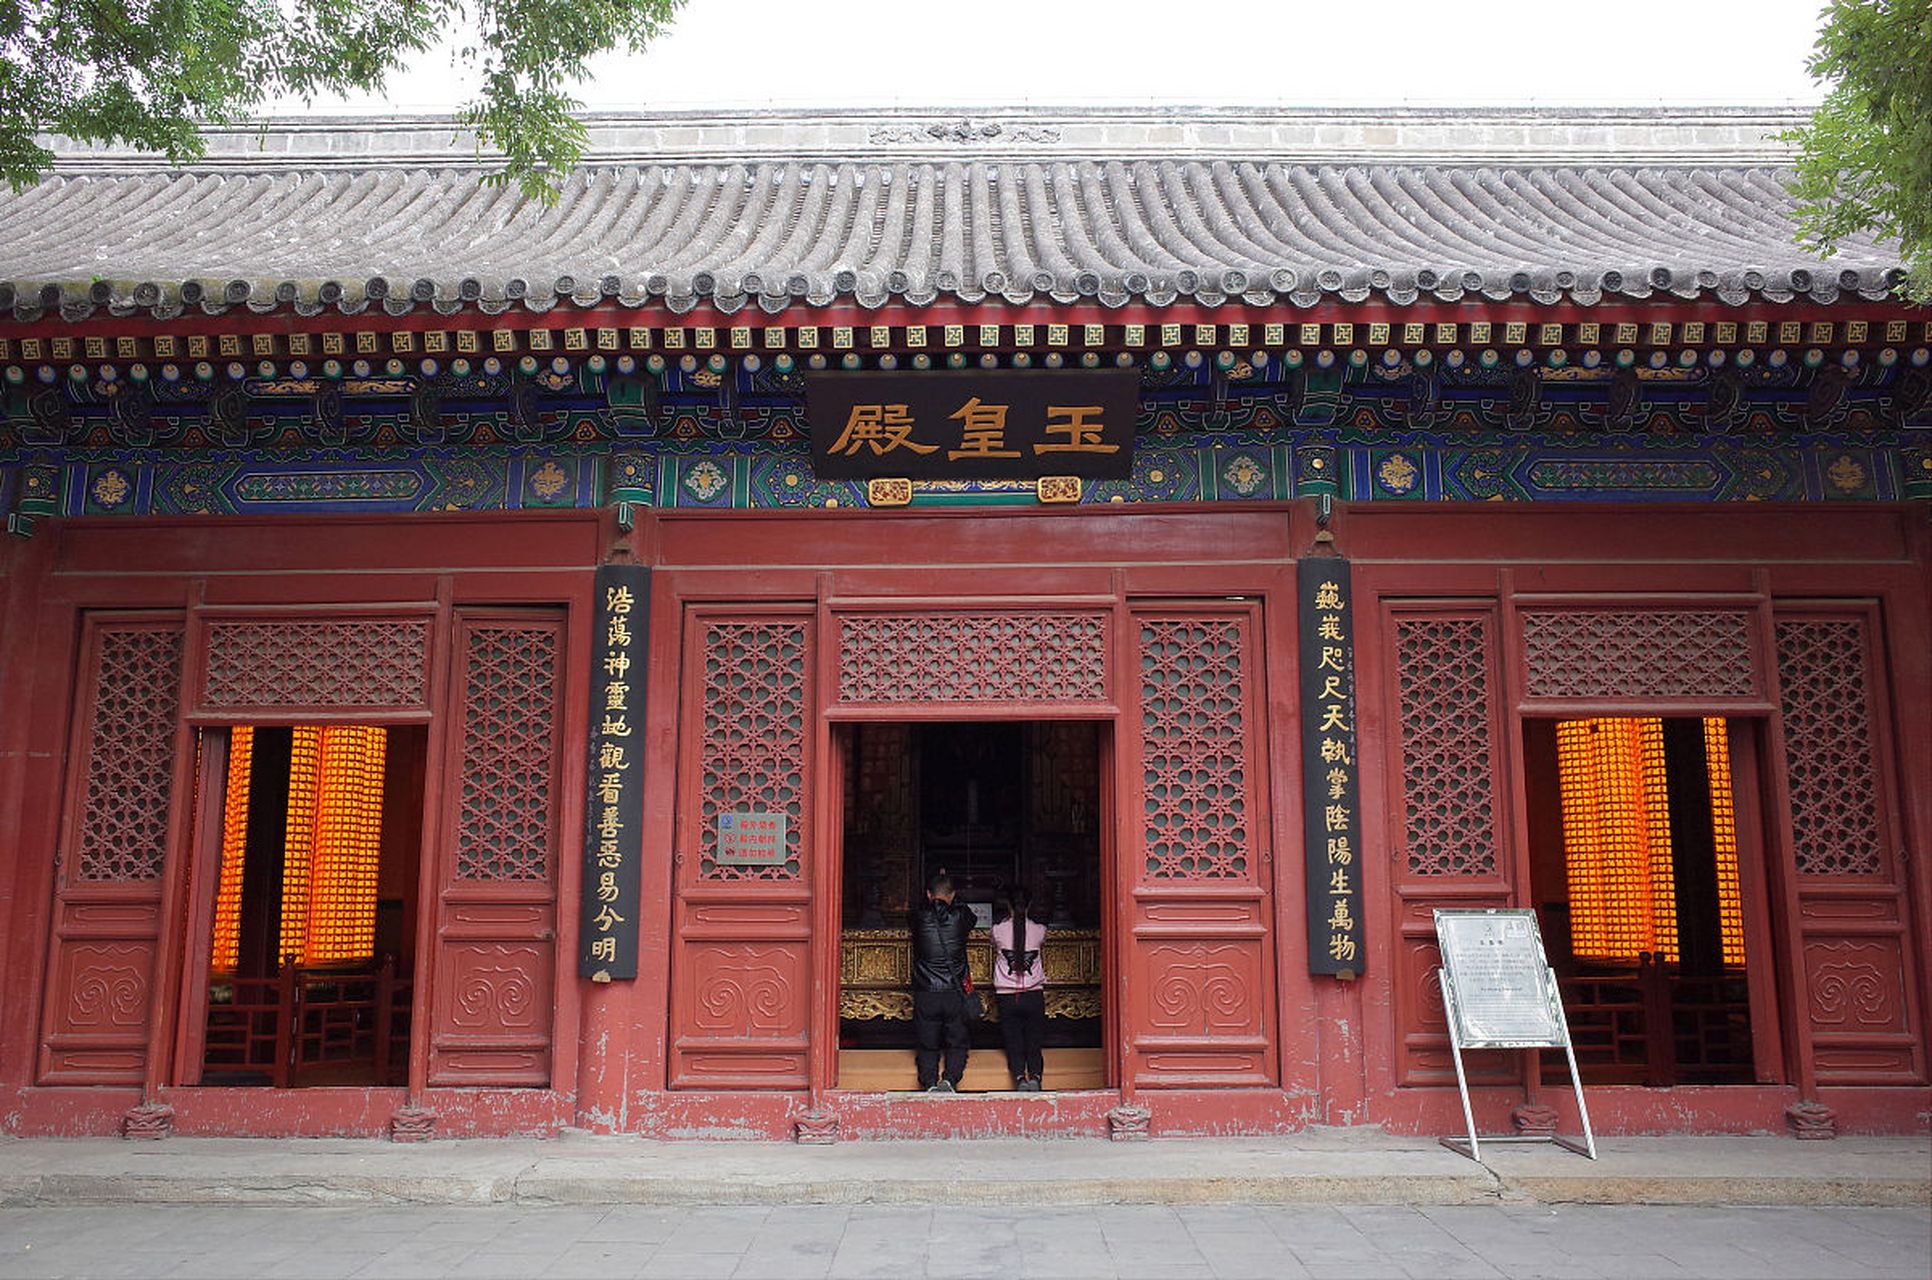 9297 说到天津的旅游景点,那怎么能不提宝坻广济寺呢?